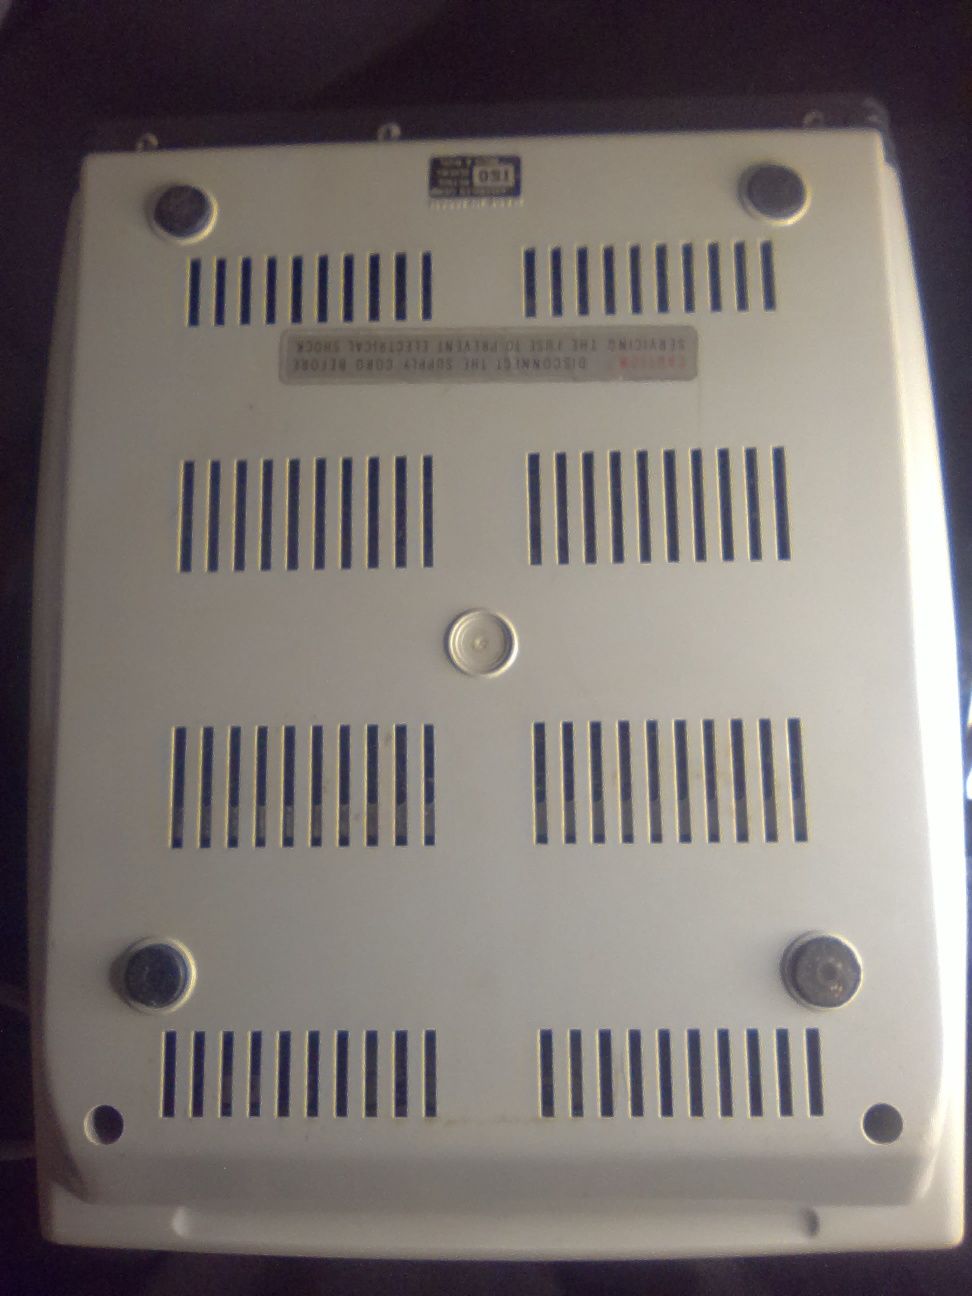 Calculadora Electrónica Vintage Sharp compet CS-221A